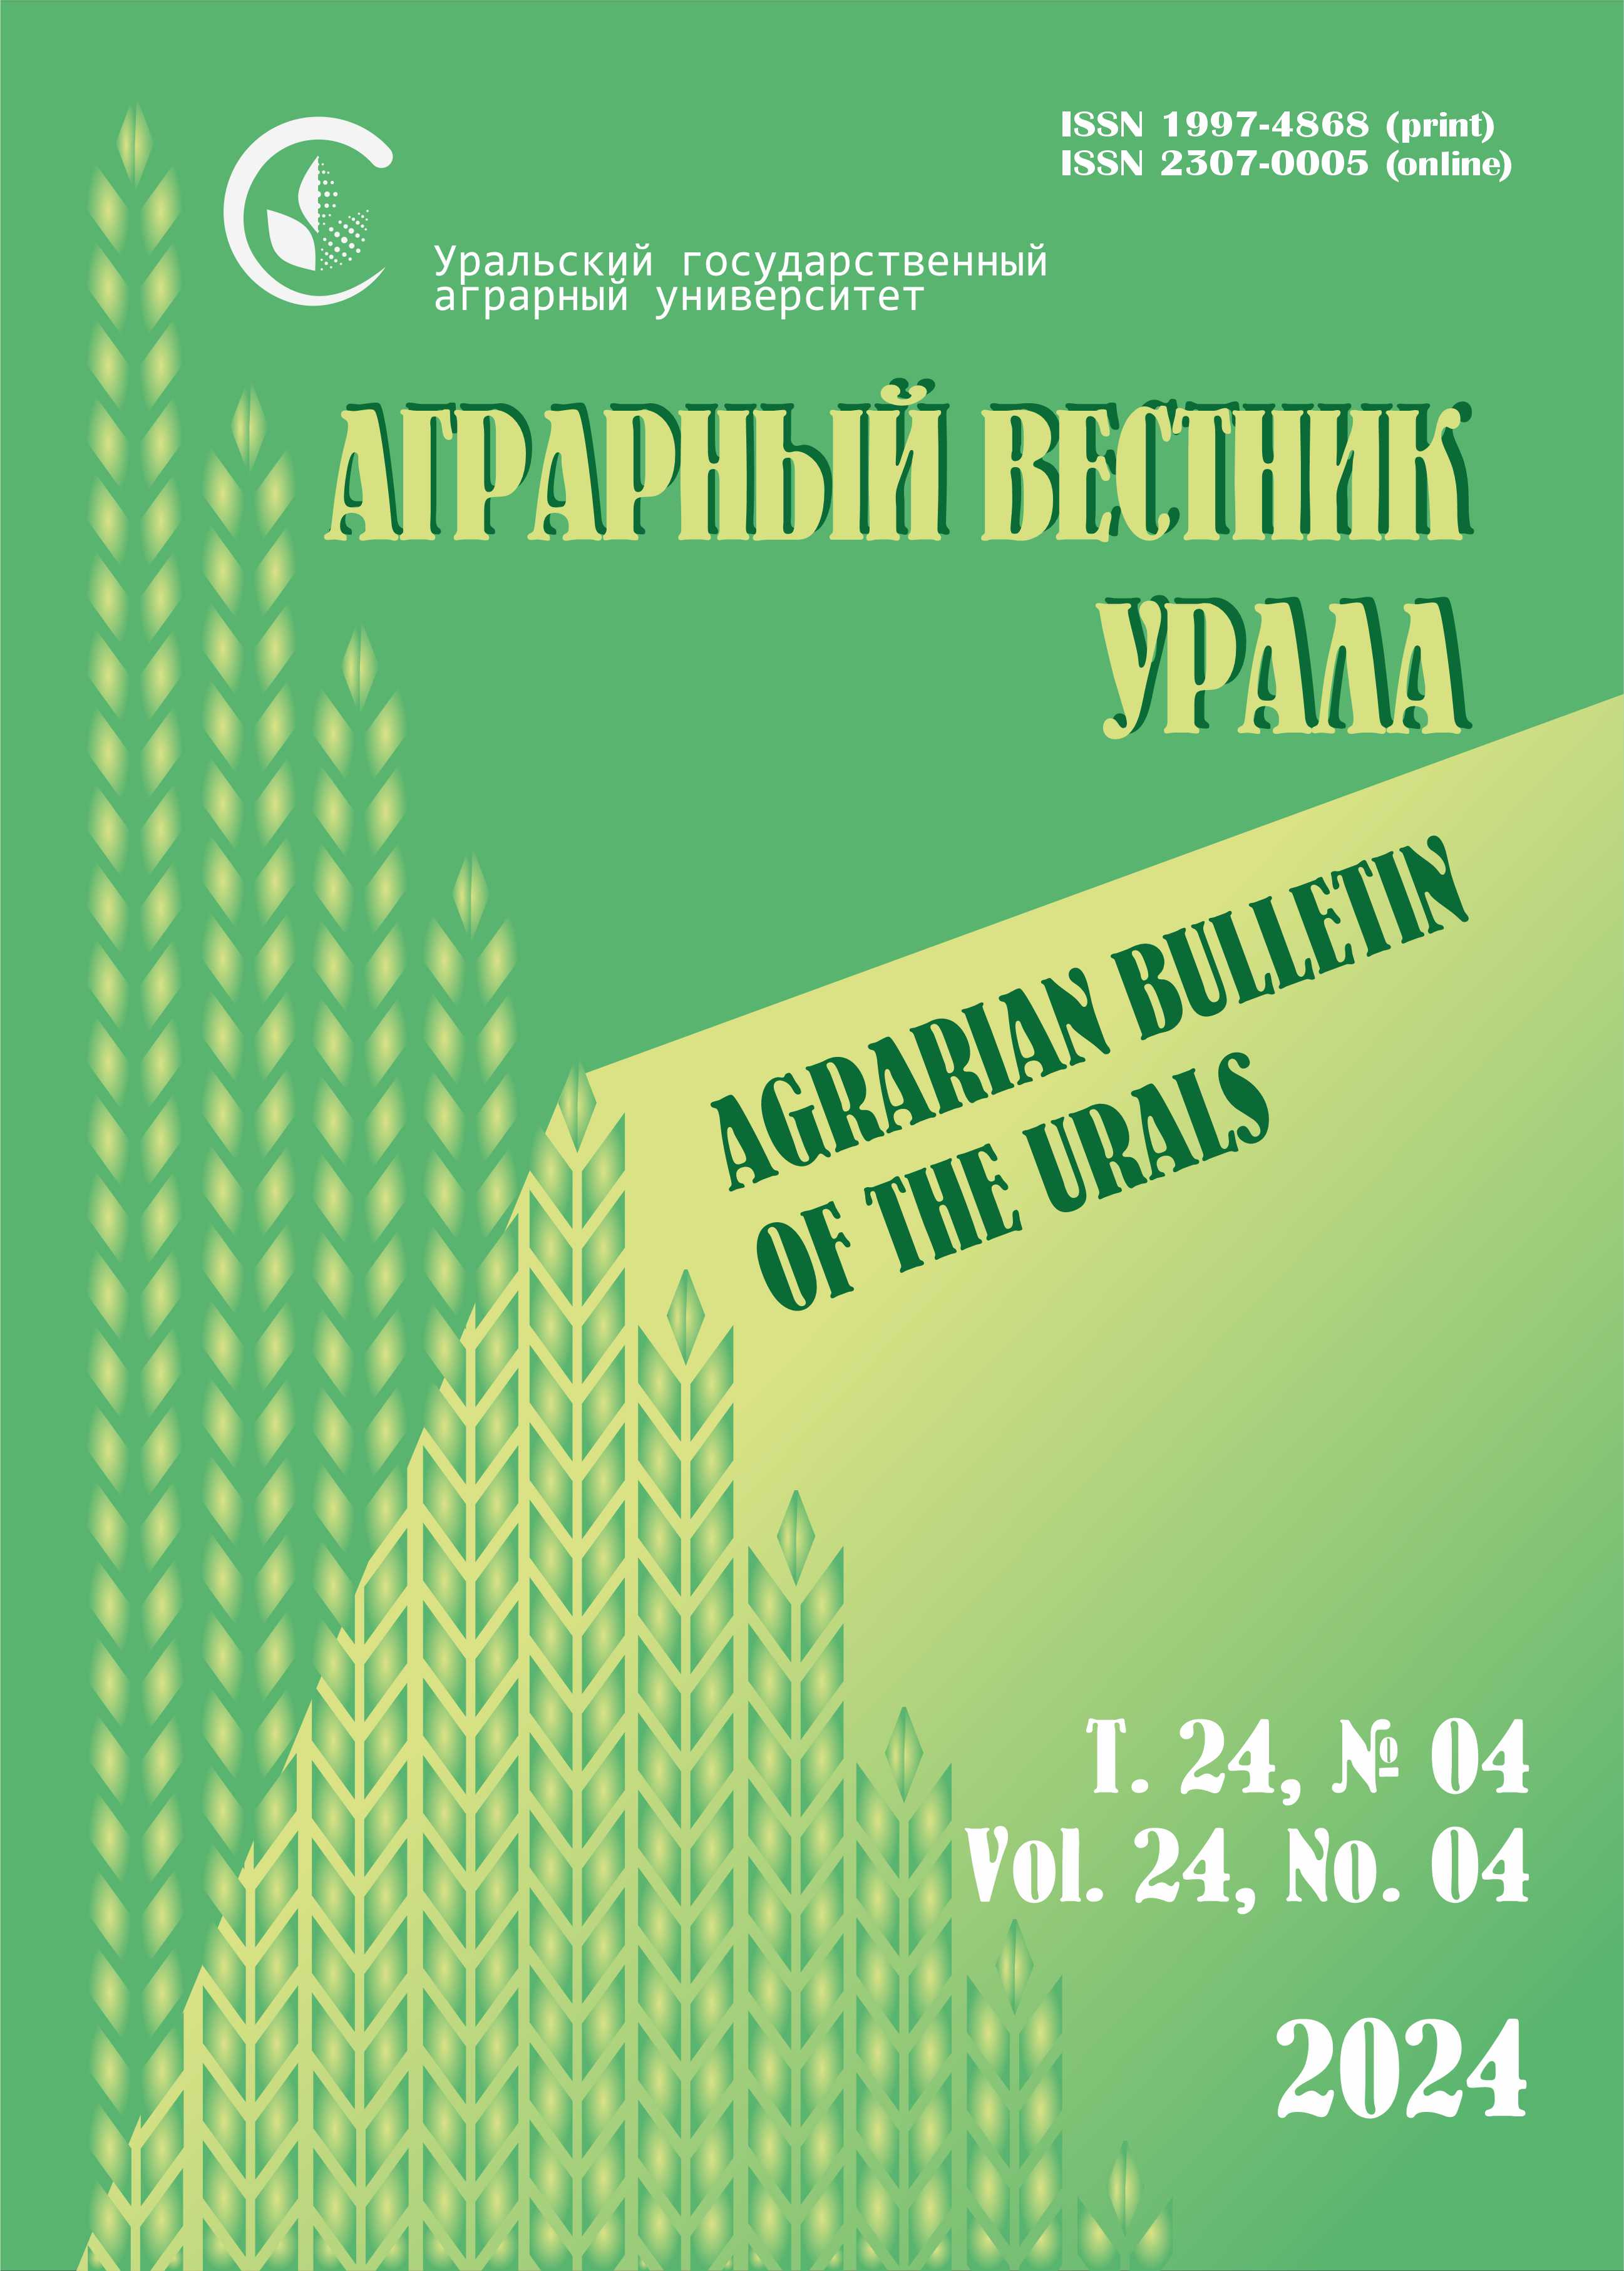             Качество зерна яровой мягкой пшеницы в Северо-Казахстанской области Республики Казахстан
    